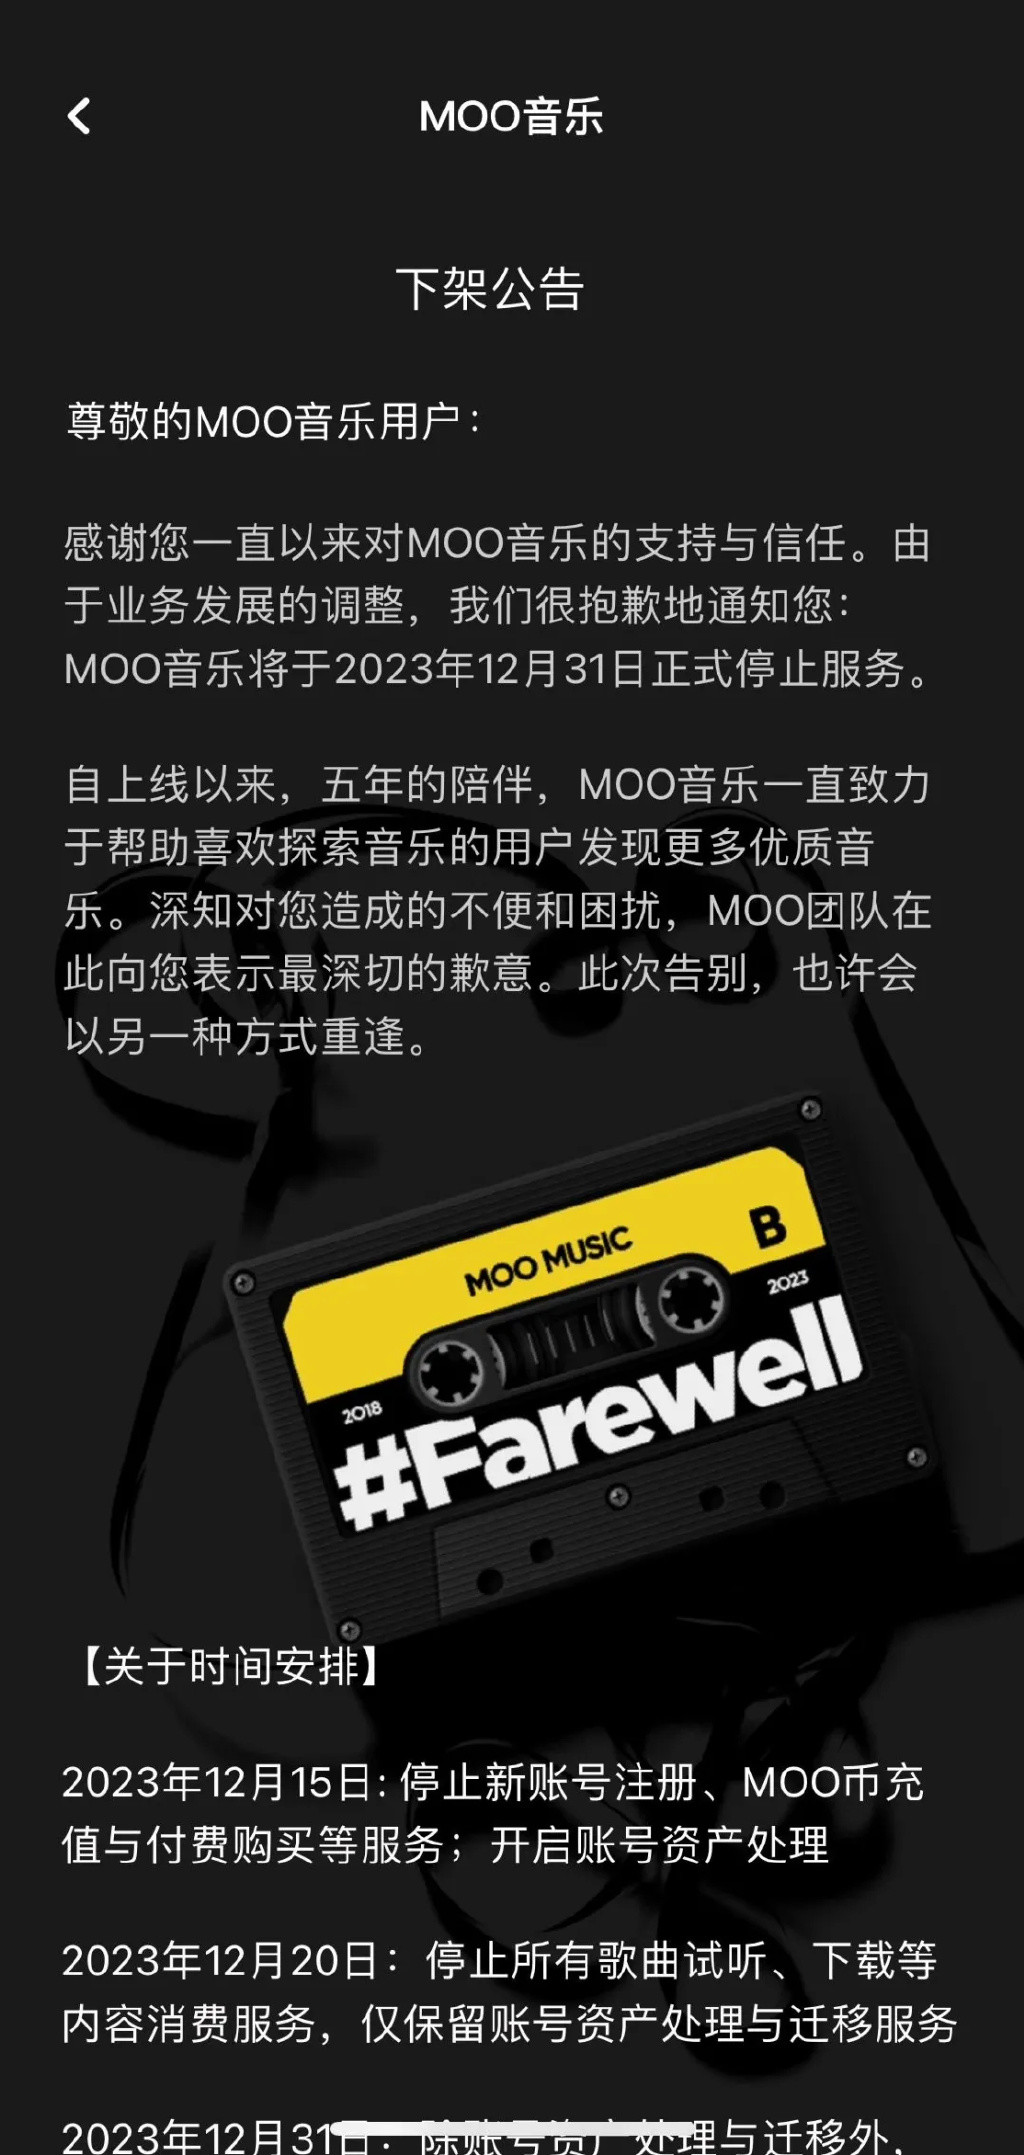 腾讯旗下 MOO 音乐将关停，12 月 31 日正式停止服务